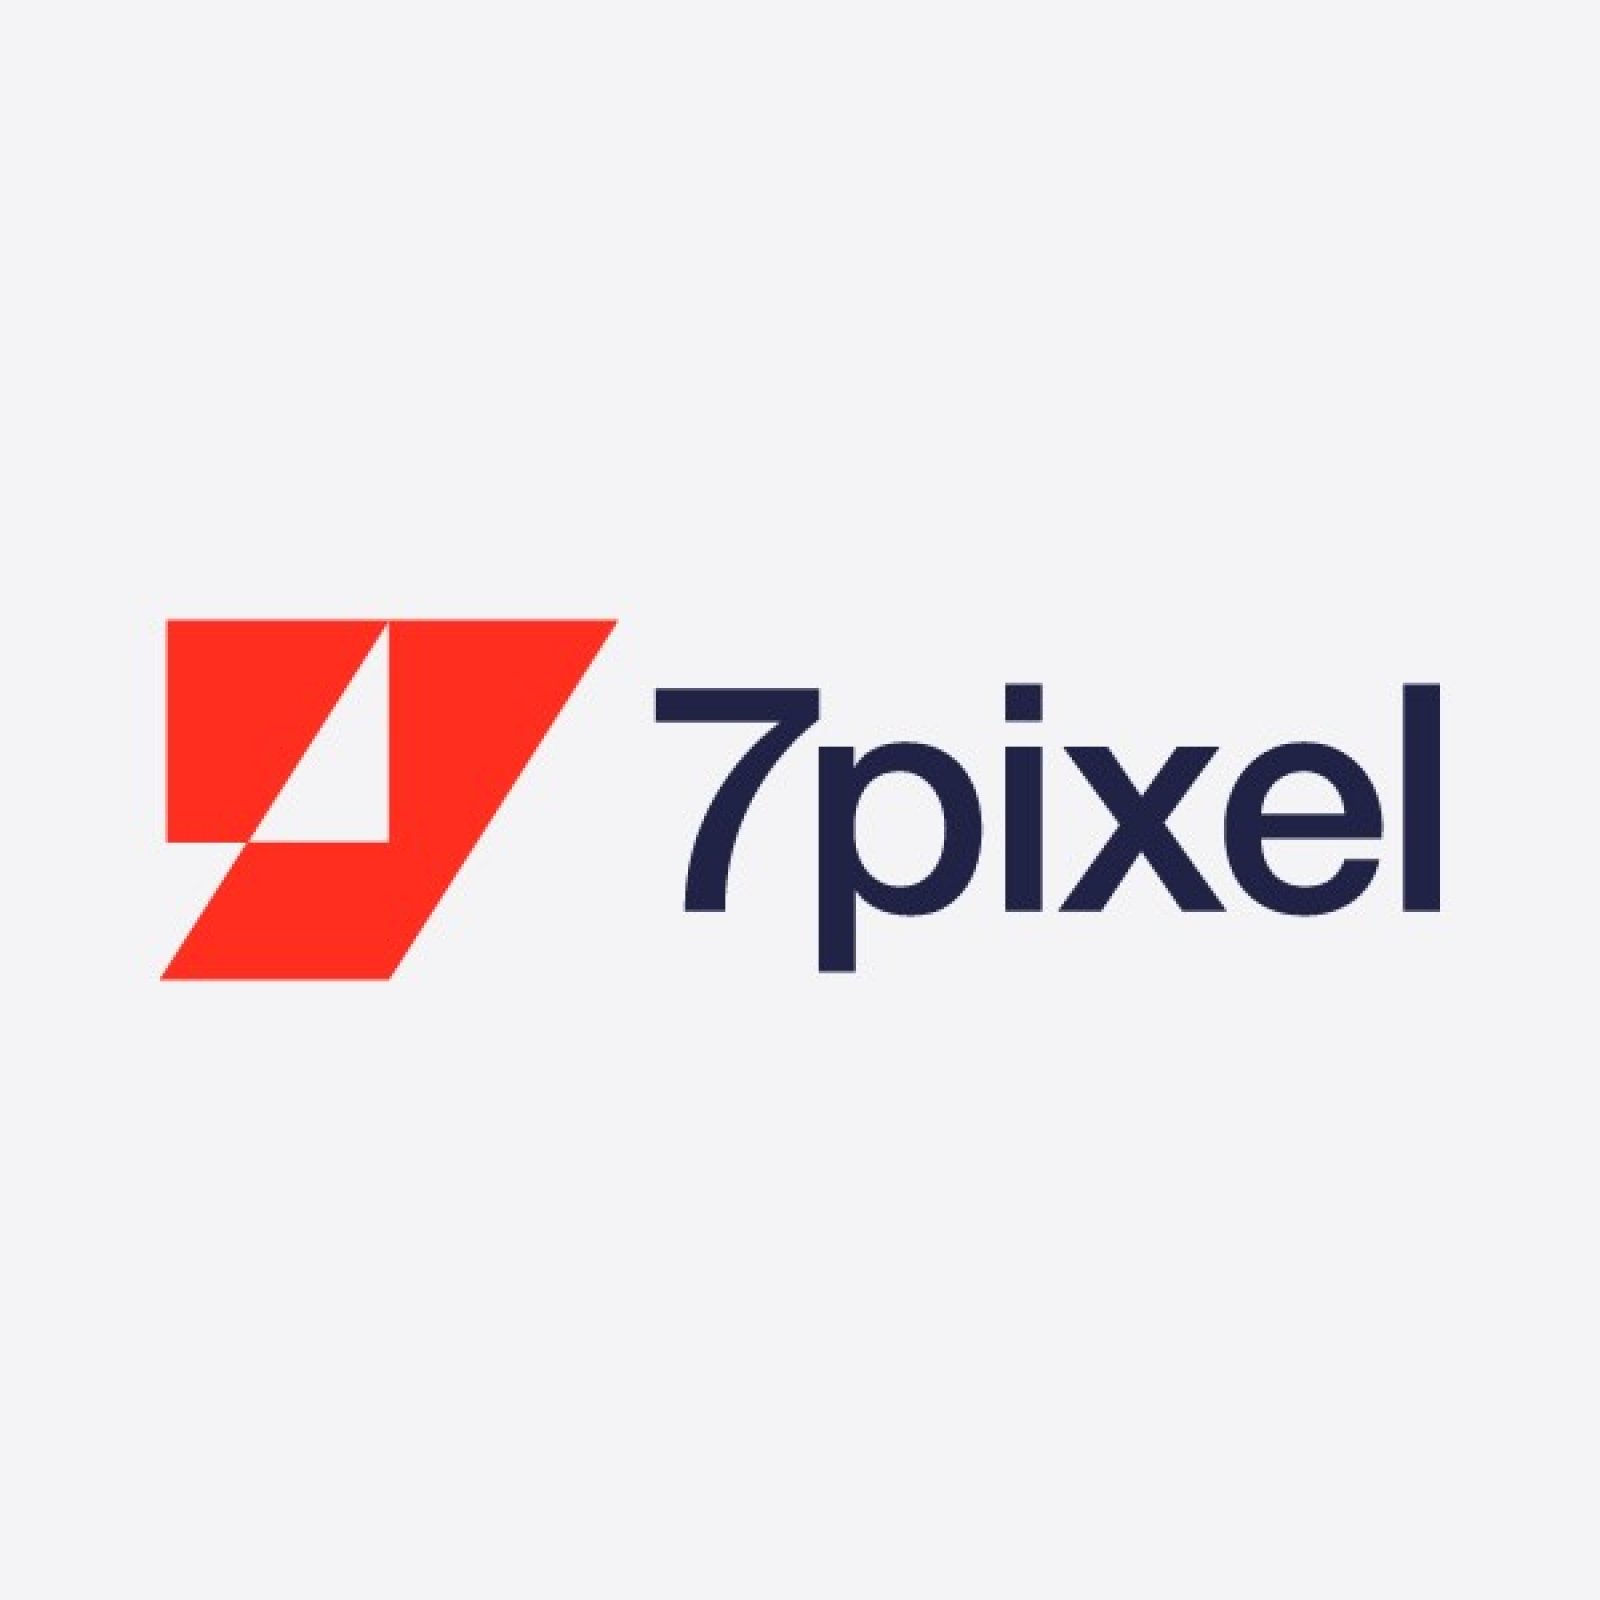 Logo 7pixel